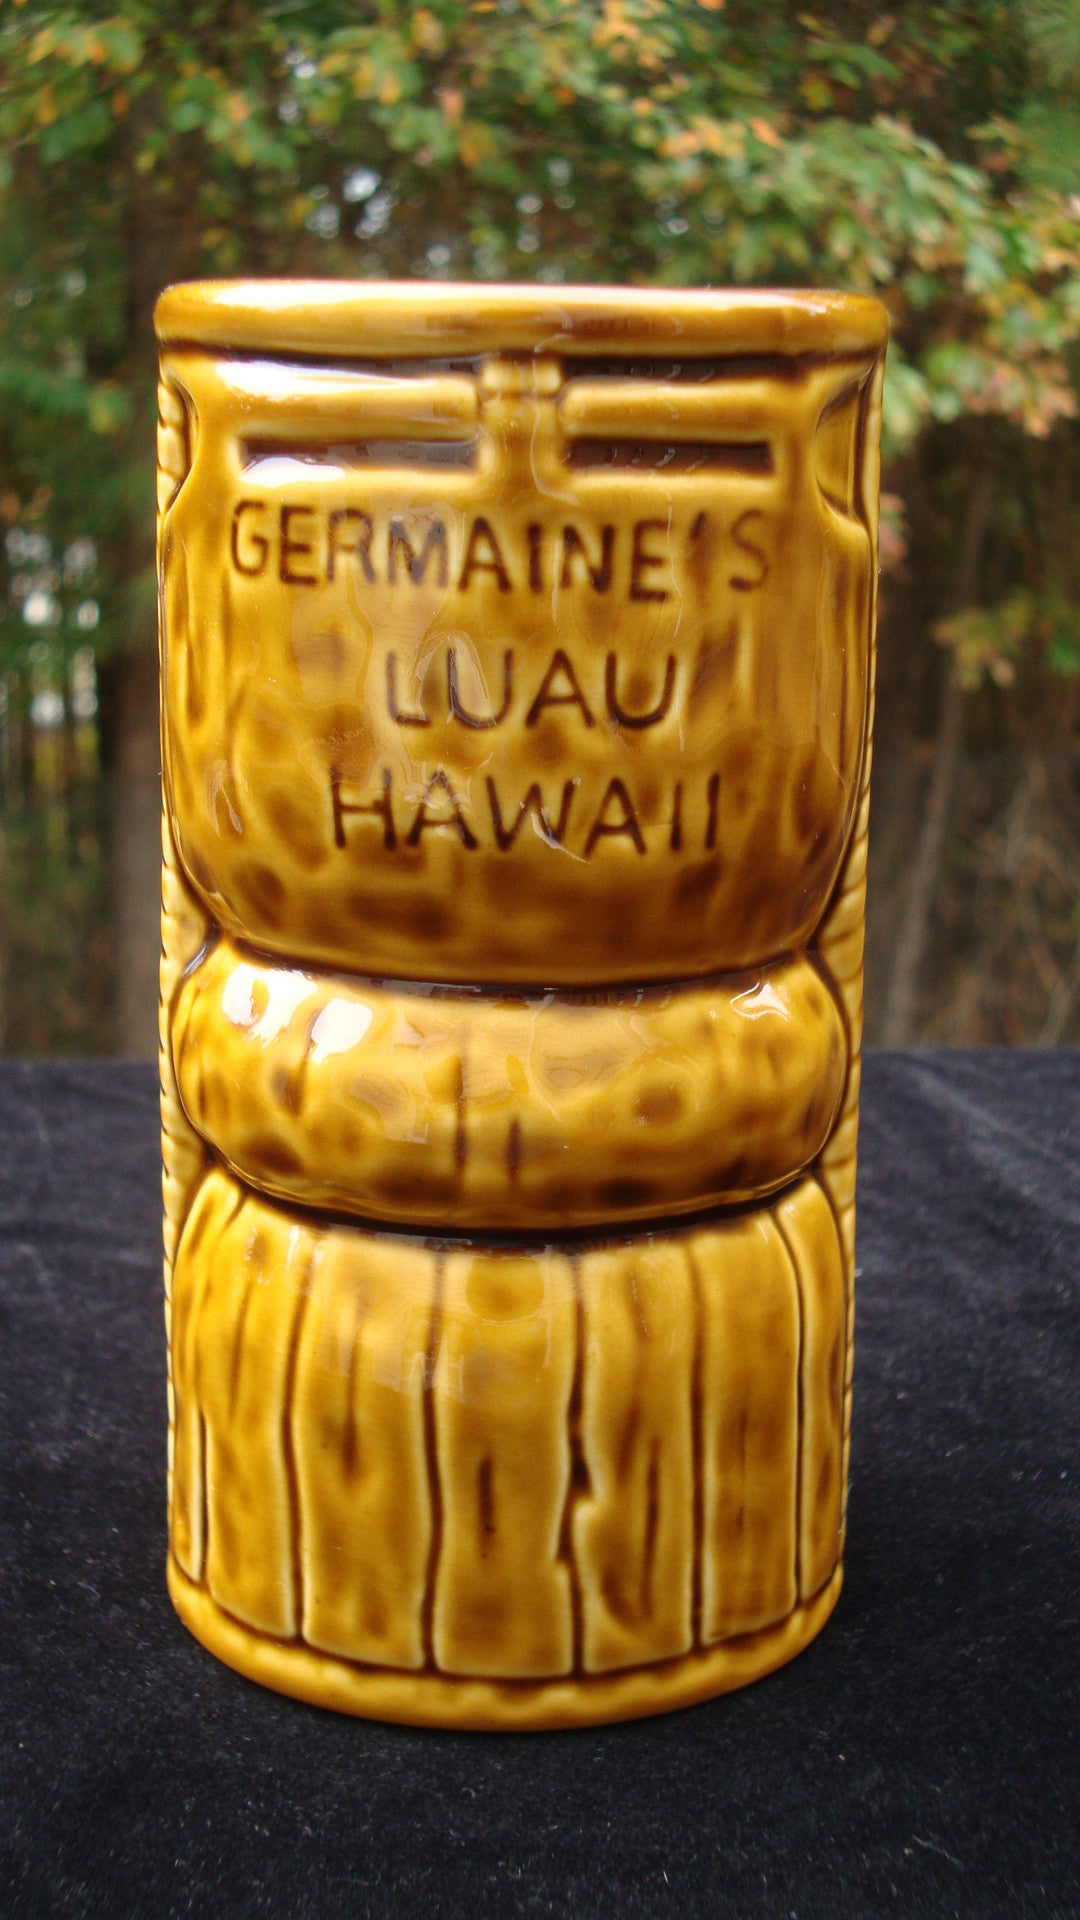 PAIR OF 2 GERMAINE’S LUAU HAWAII WARRIOR TIKI CERAMIC GLASSES